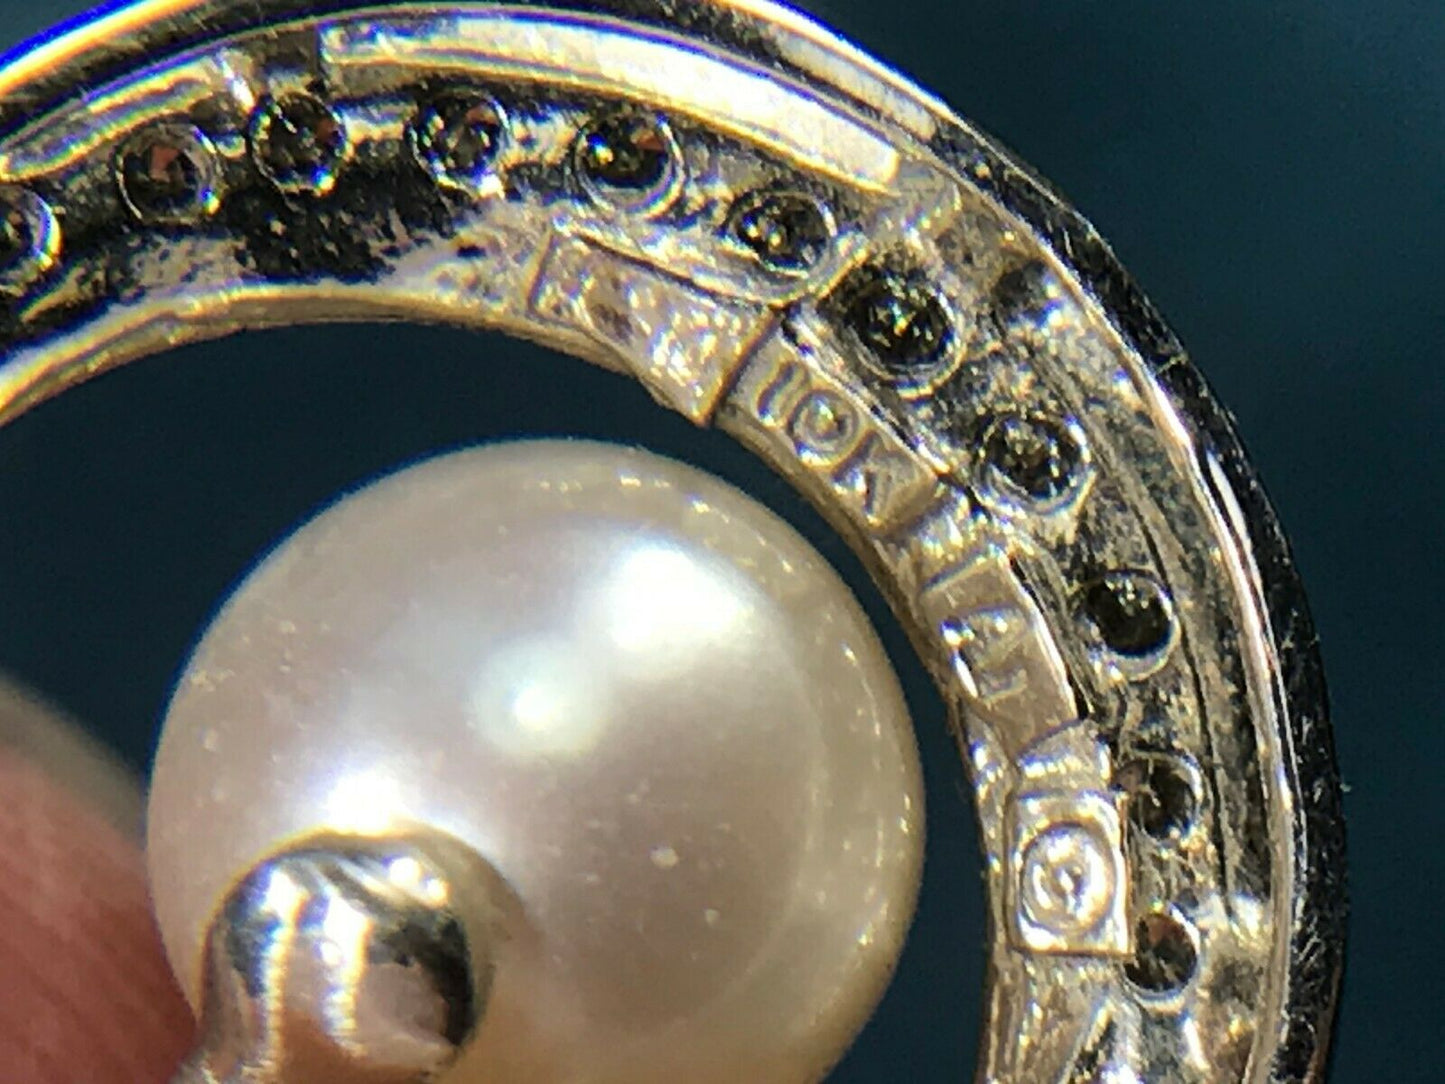 10k White Gold Pearl Circle Pendant w Bezel-set Diamond & Halo. Modern -K5L8J